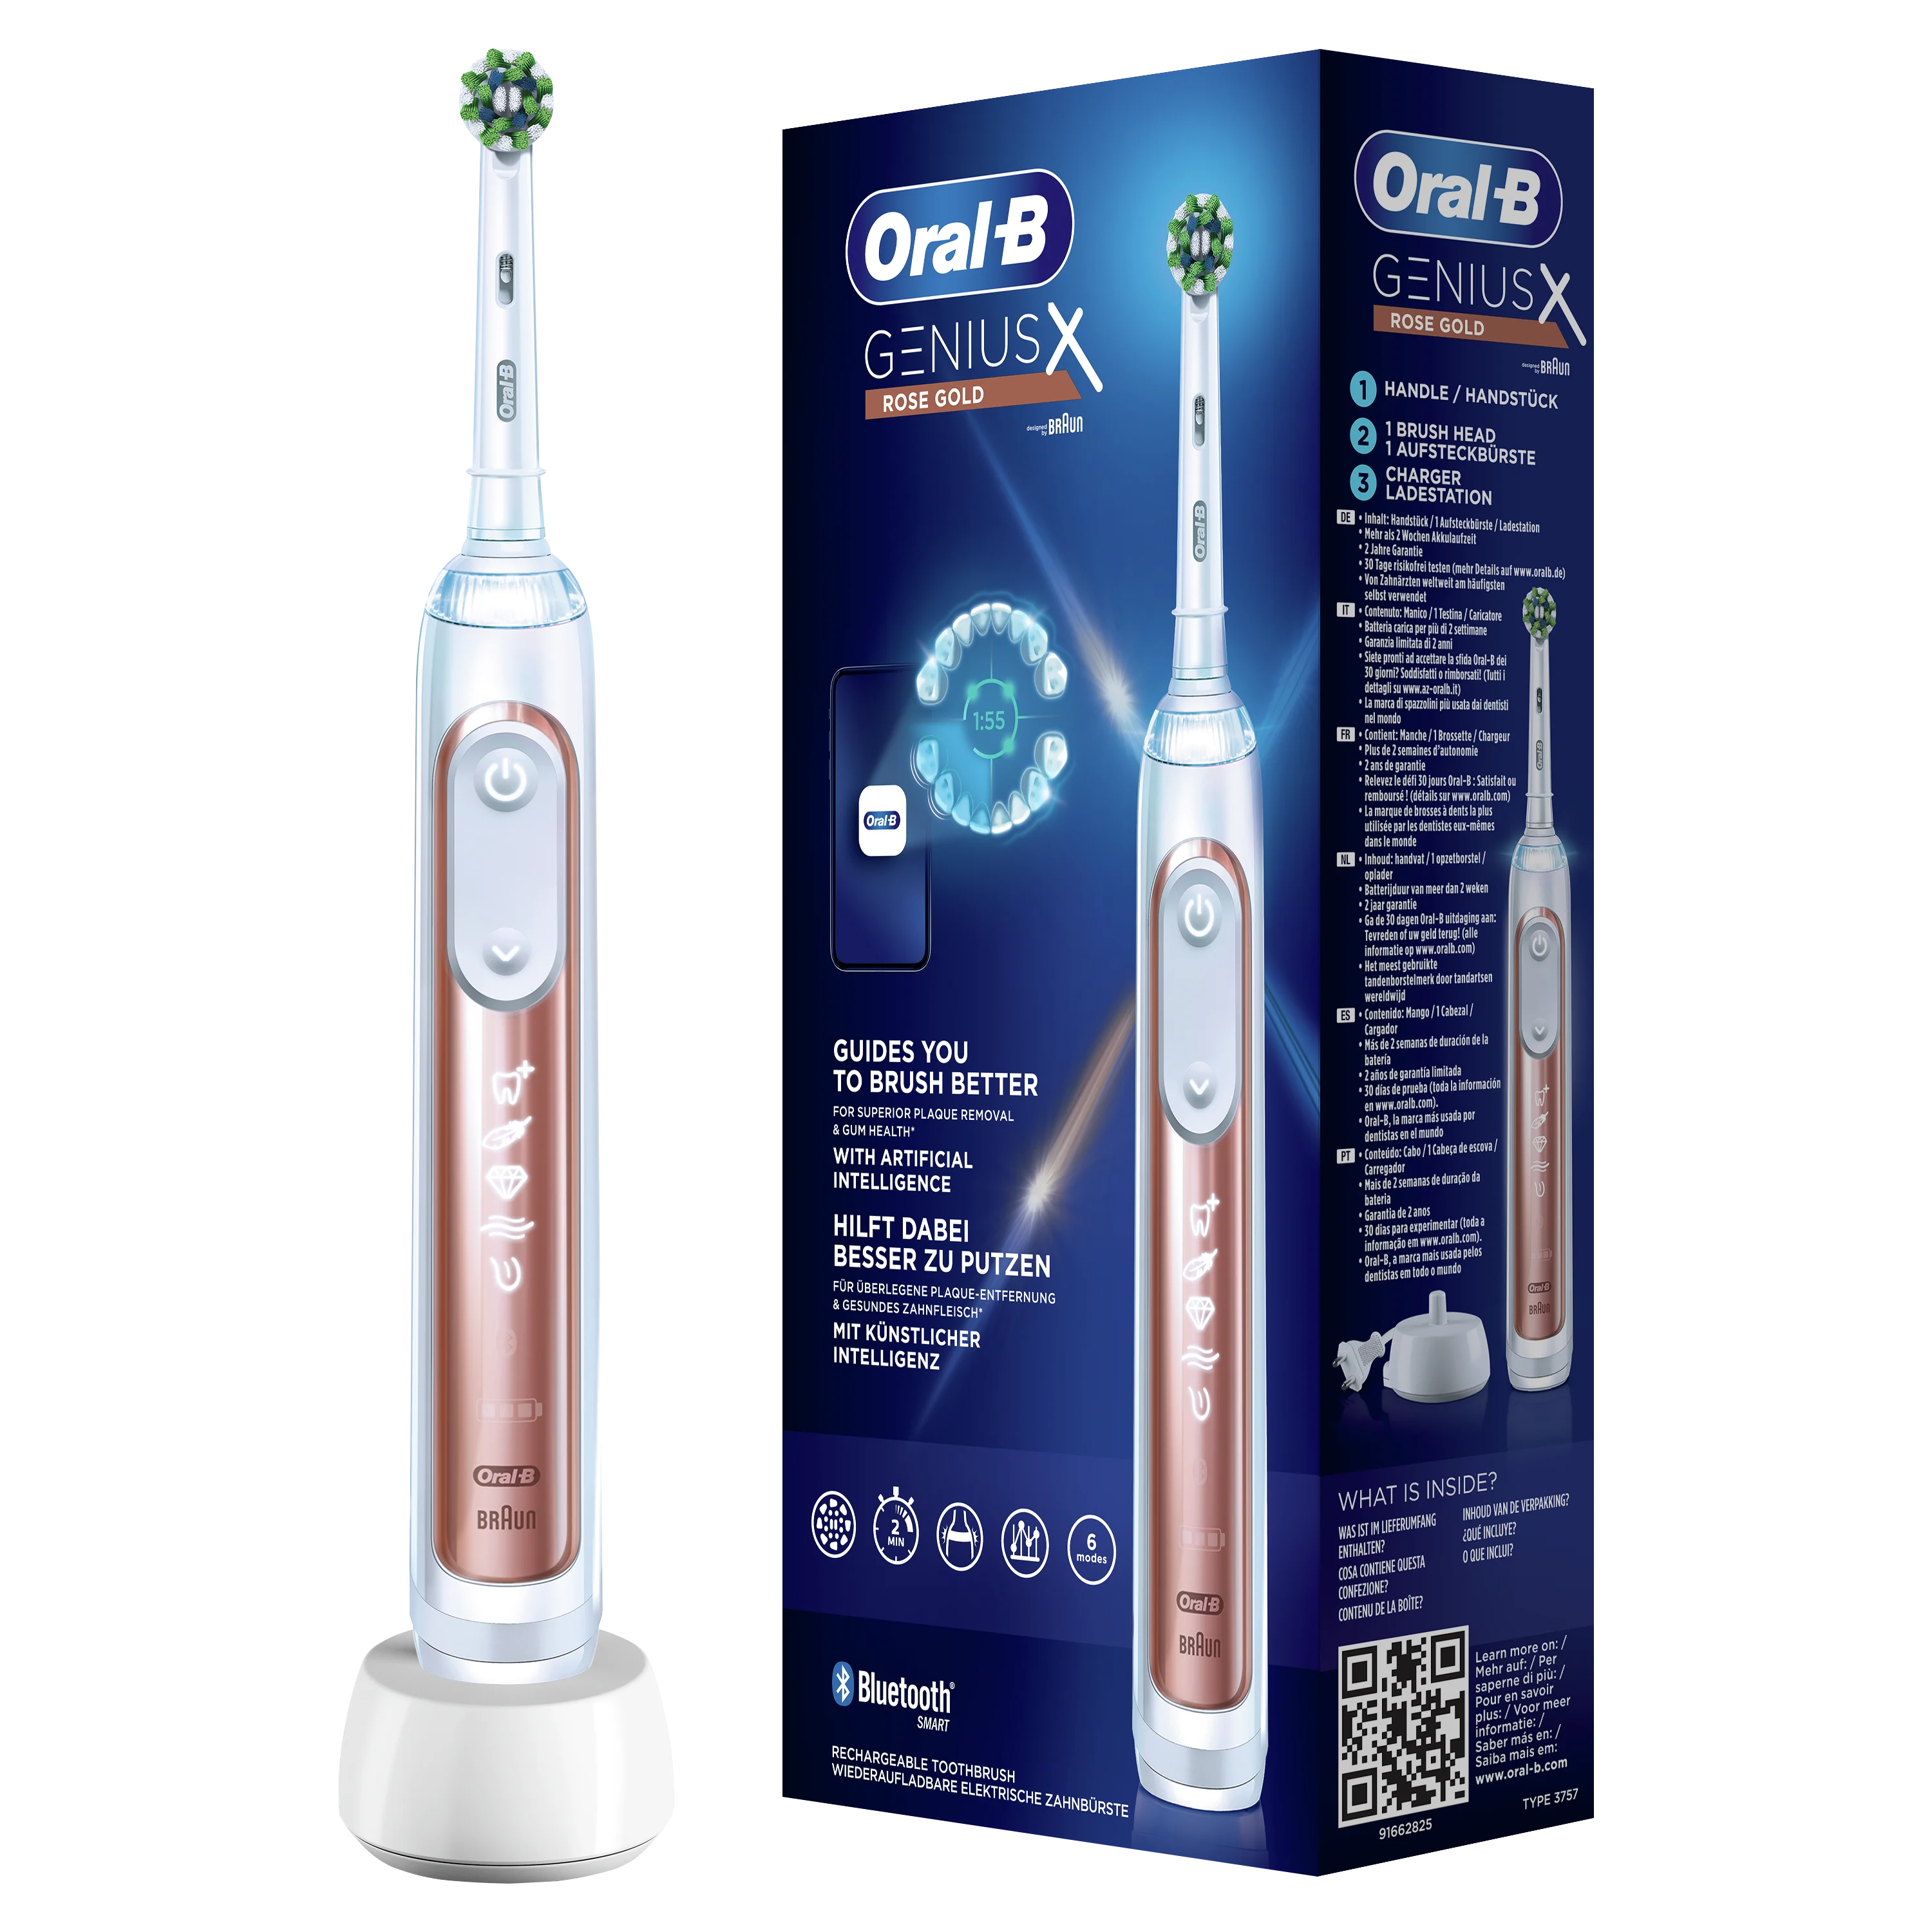 In zicht uitspraak oorsprong Oral-B Speciale Editie Genius X Elektrische Tandenborstel | Oral-B